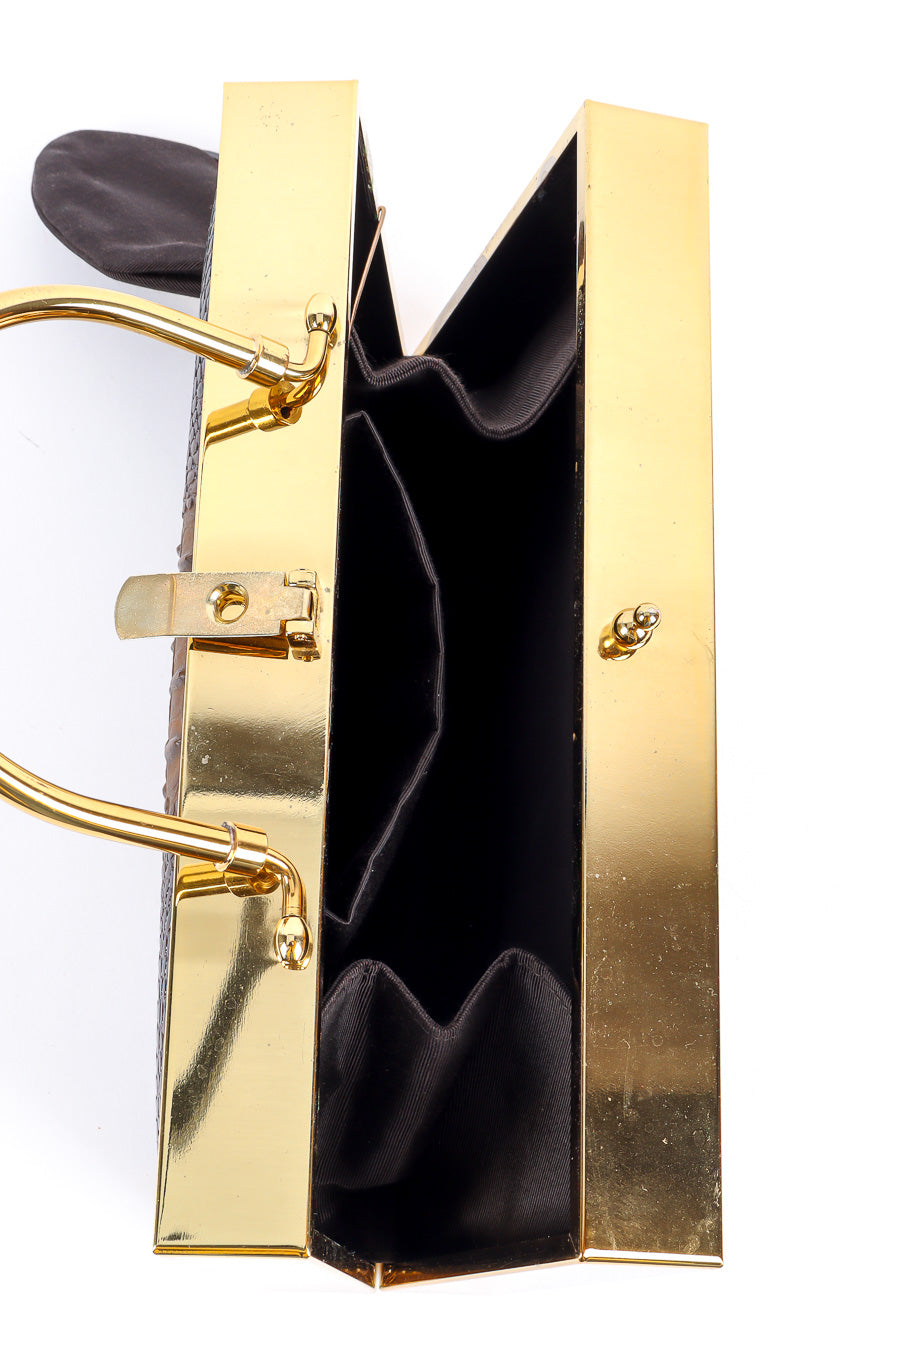 Lou Taylor gold frame box purse gold frame details @recessla